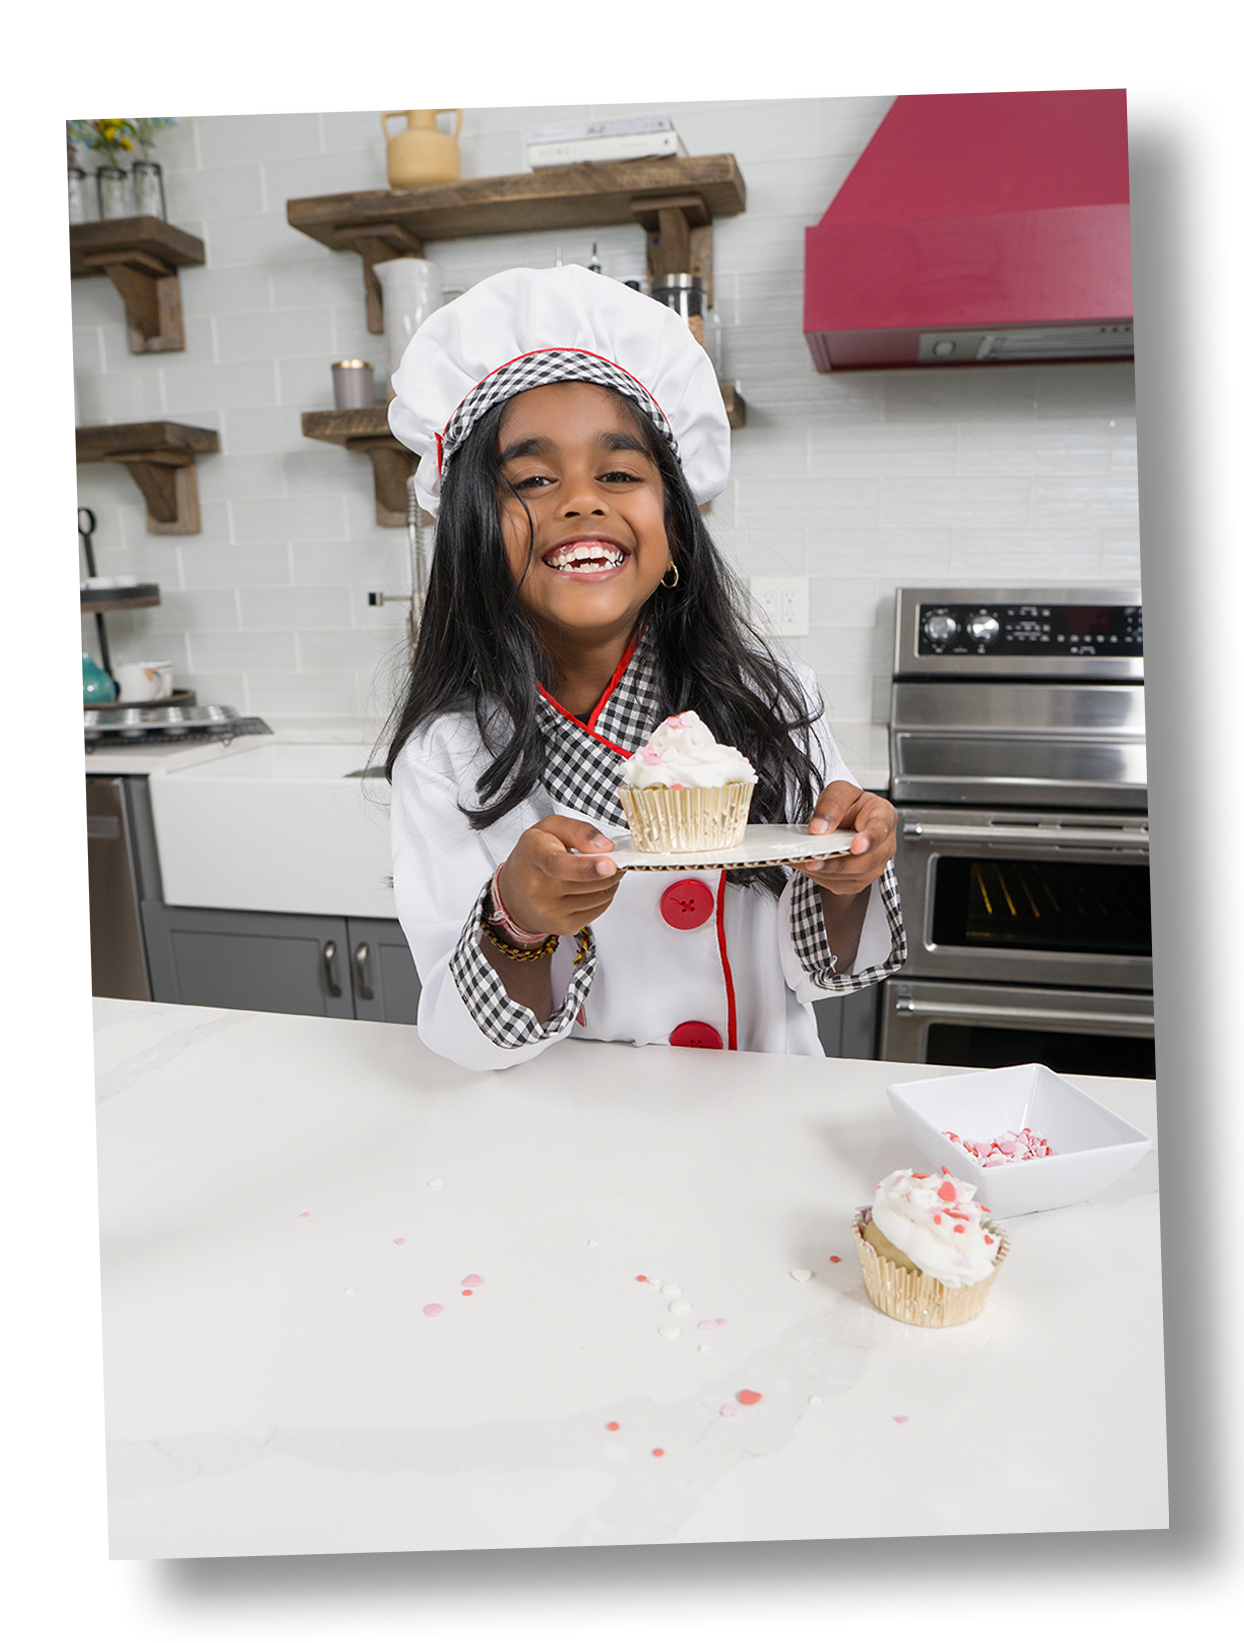 Sira Garib's daughter Kaliya holding one cupcakes, smiling in a kitchen